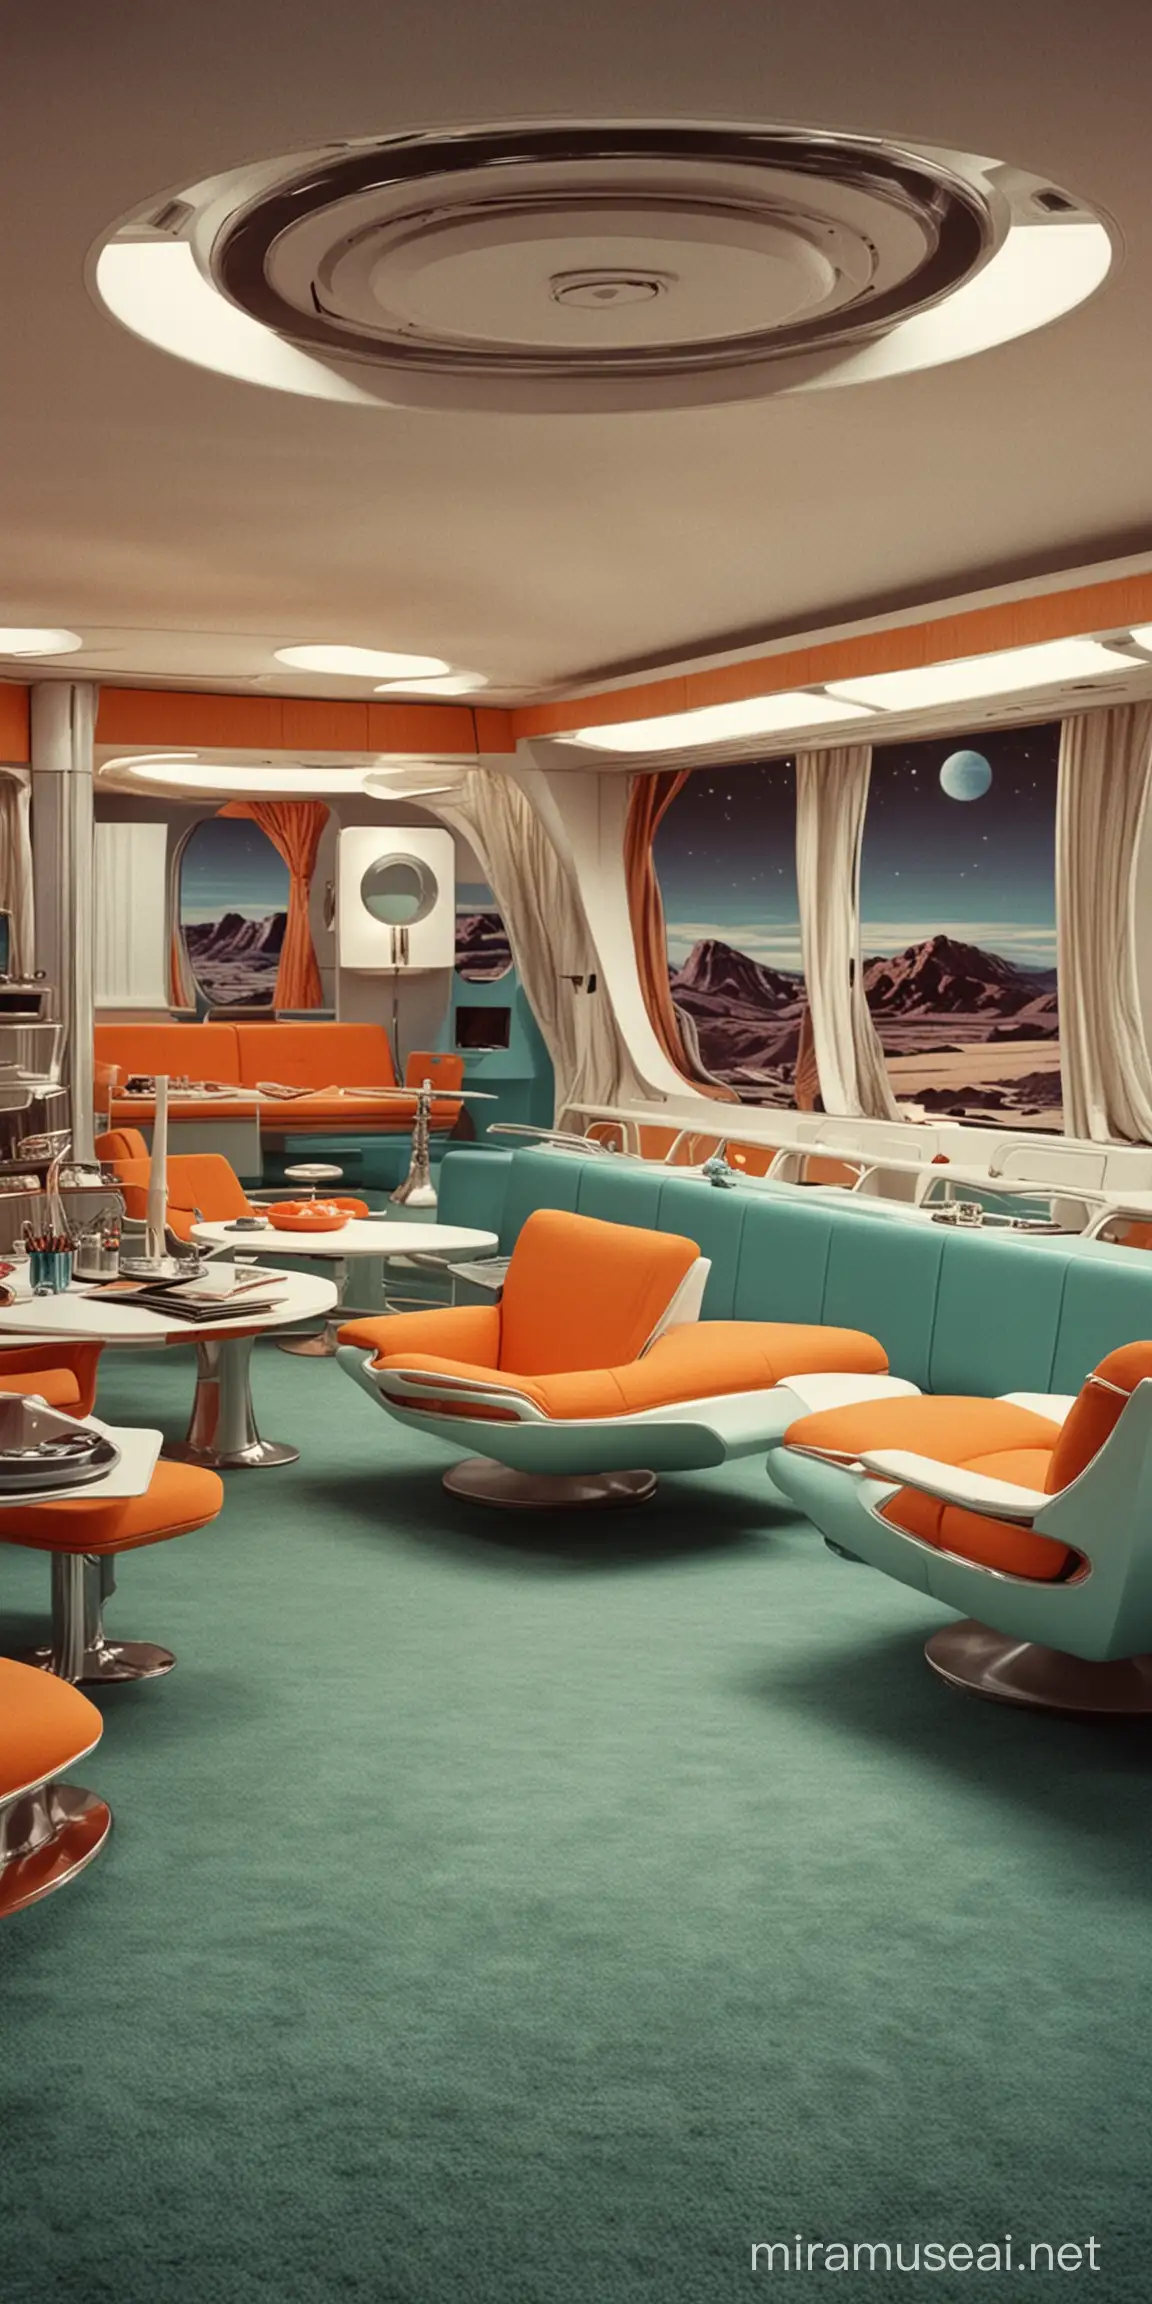 Futuristic 1960s Space Age Interior Design